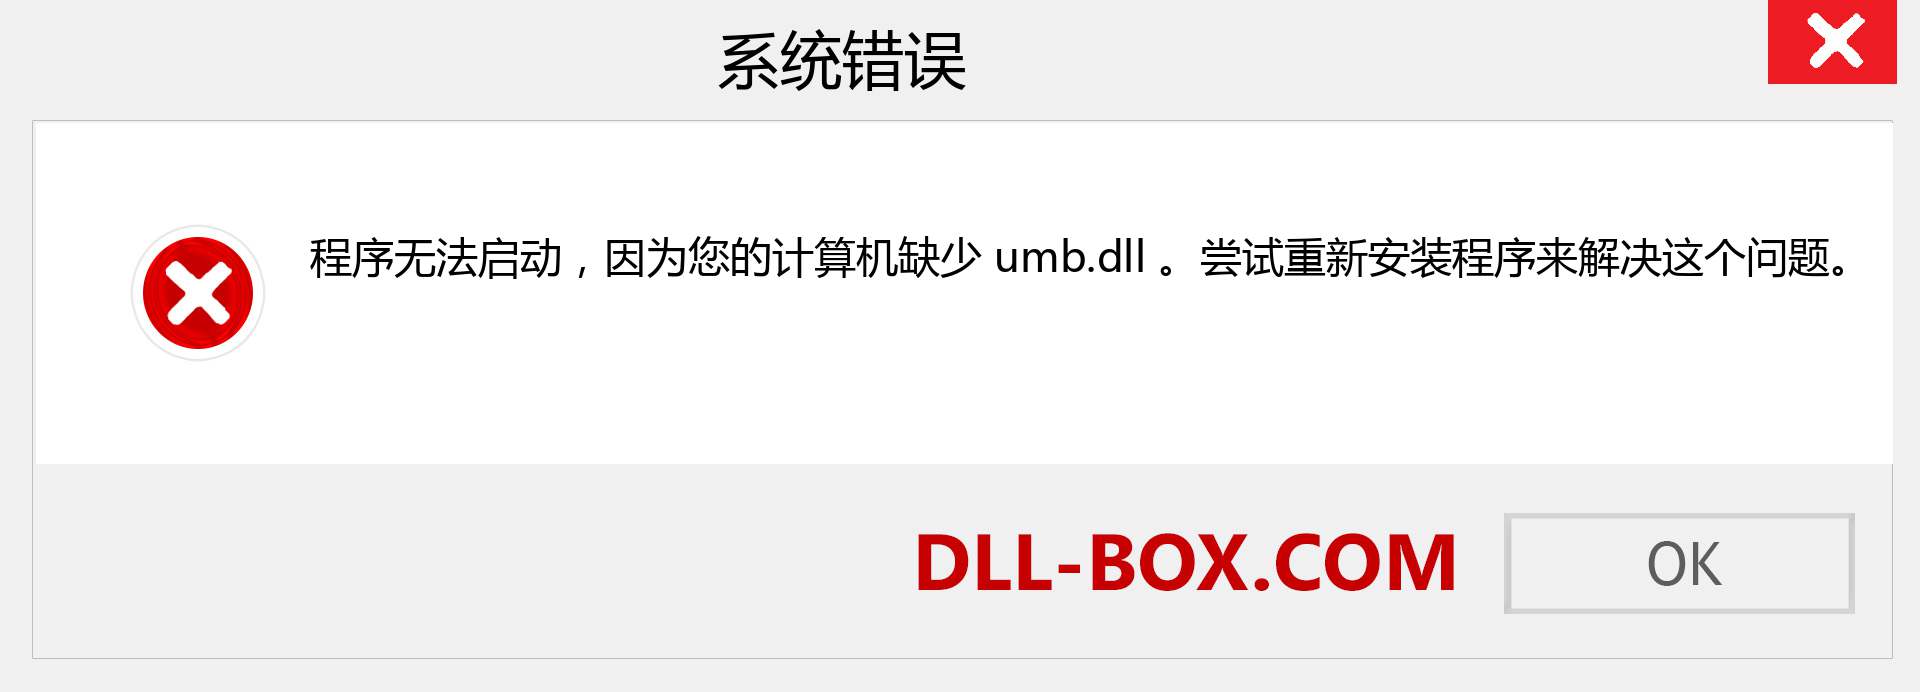 umb.dll 文件丢失？。 适用于 Windows 7、8、10 的下载 - 修复 Windows、照片、图像上的 umb dll 丢失错误